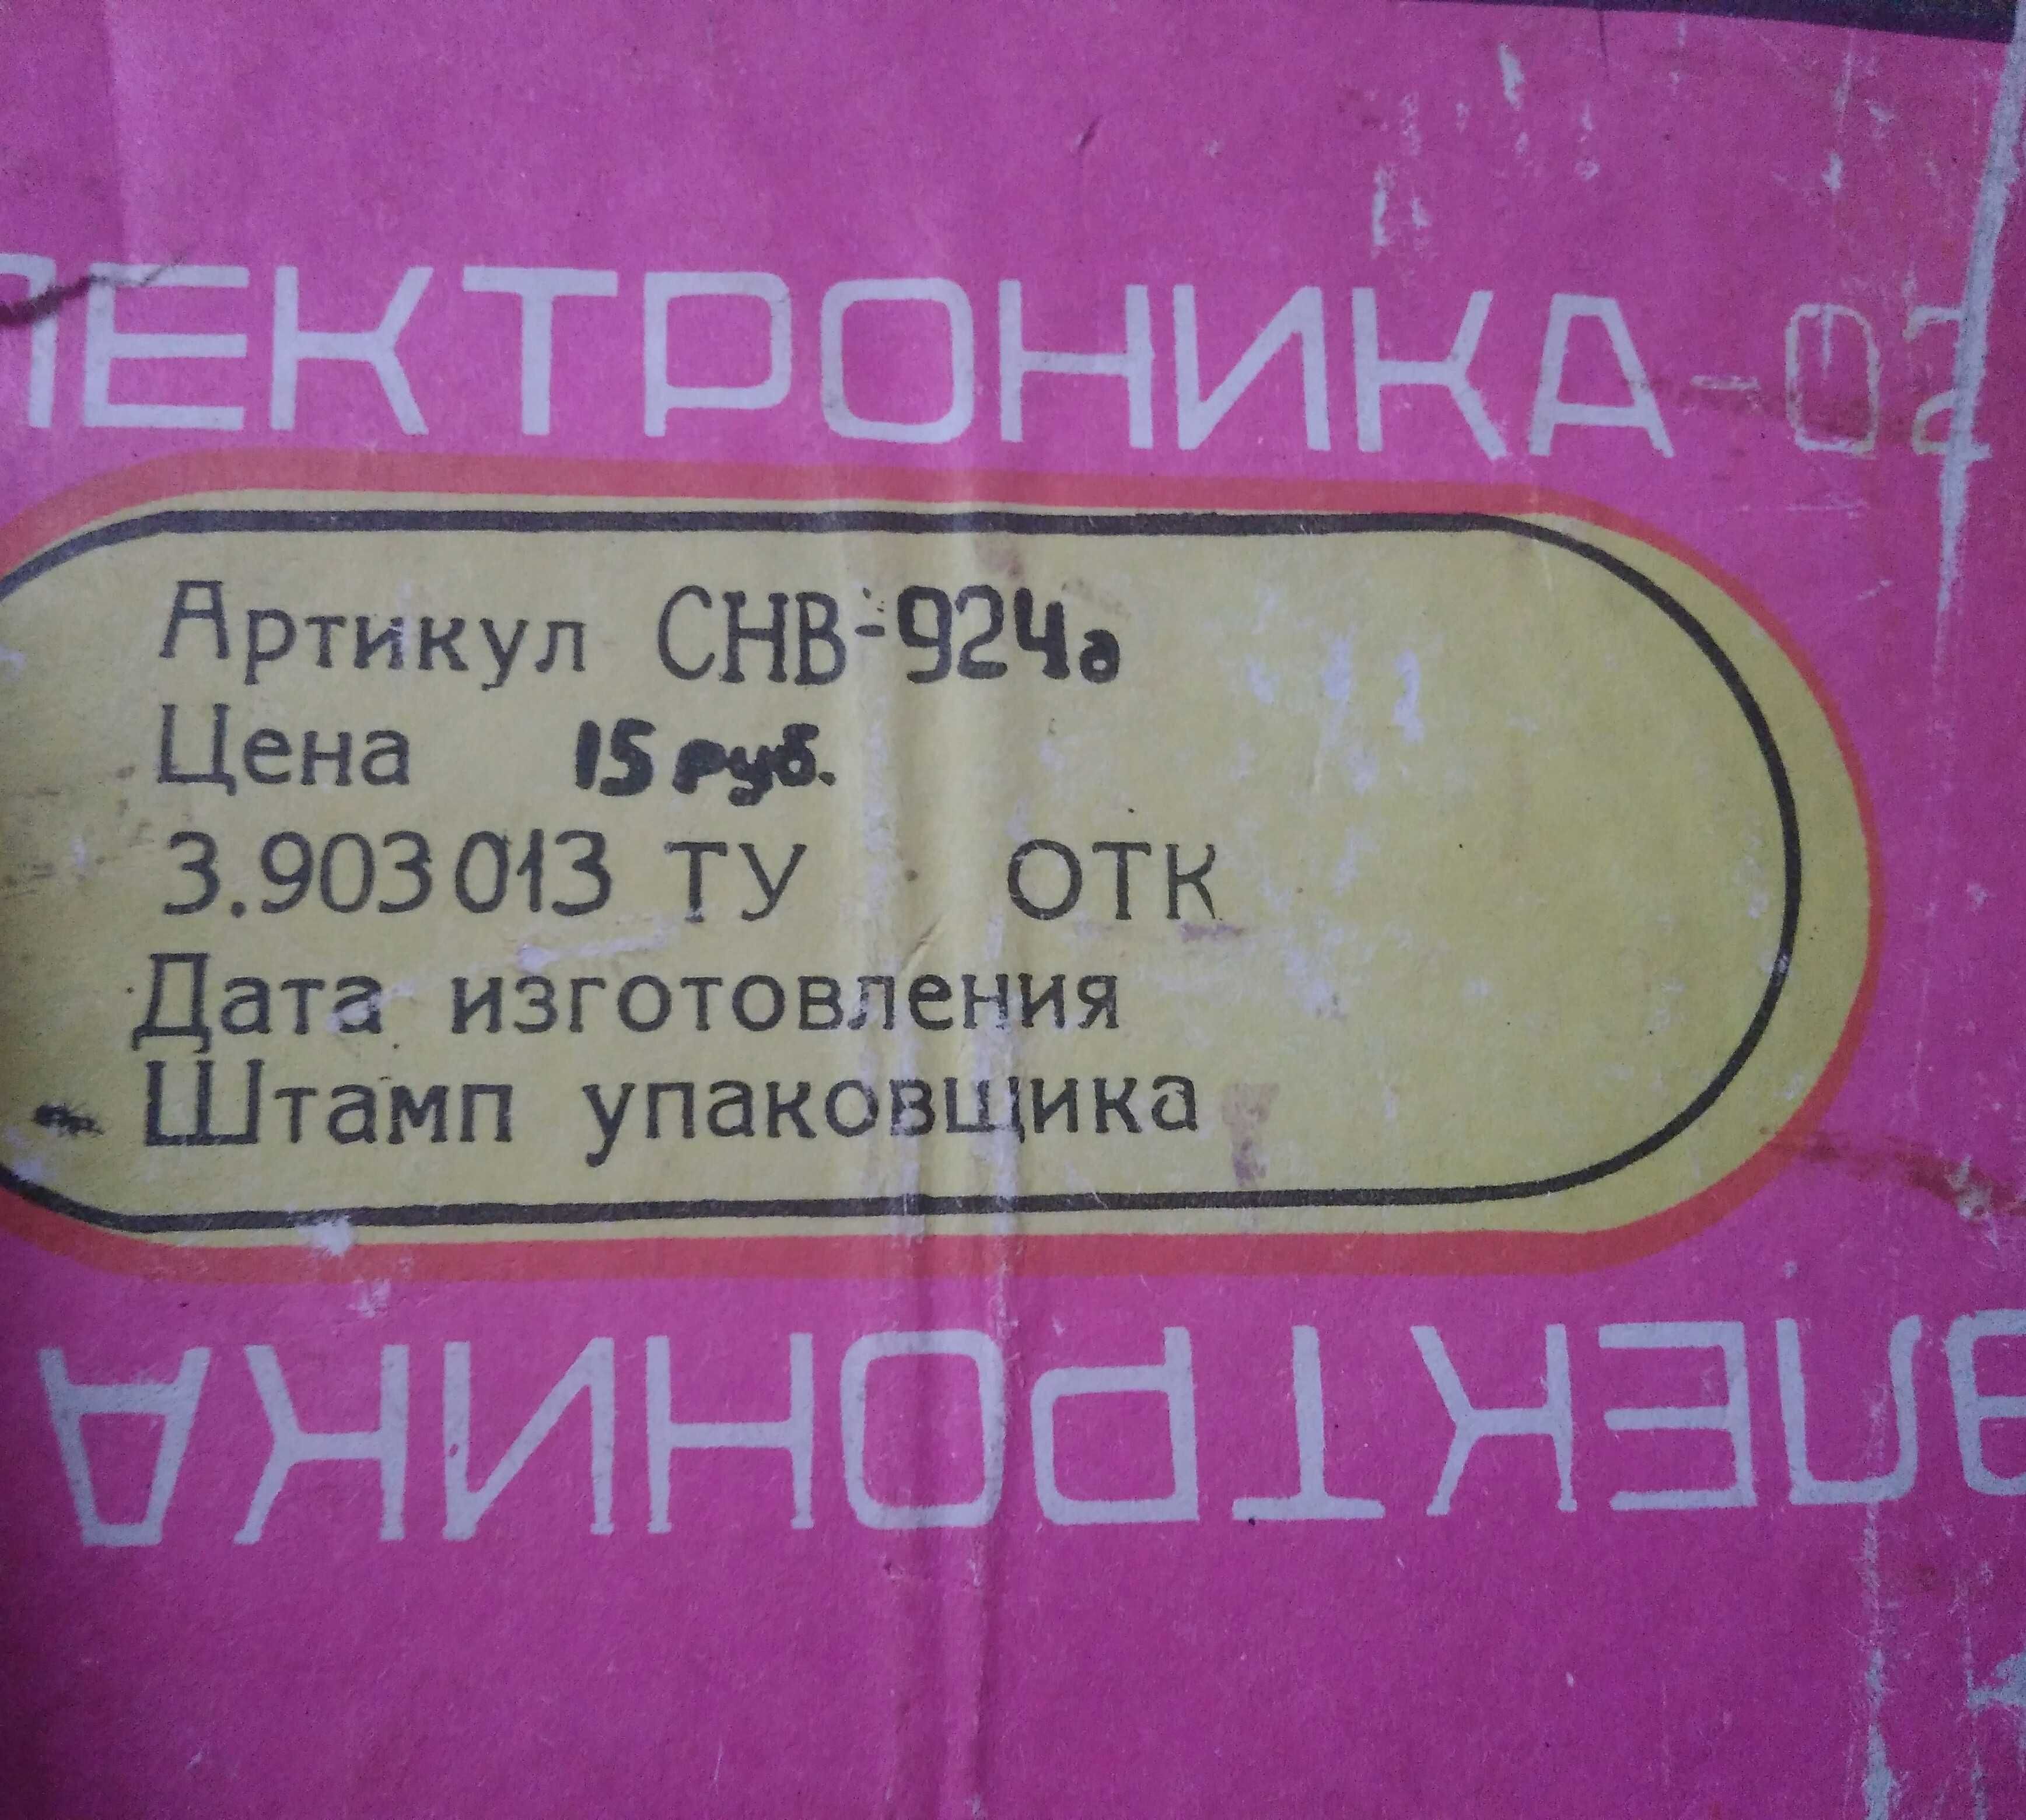 Звонок электронный Электроника-02 новый производства СССР.